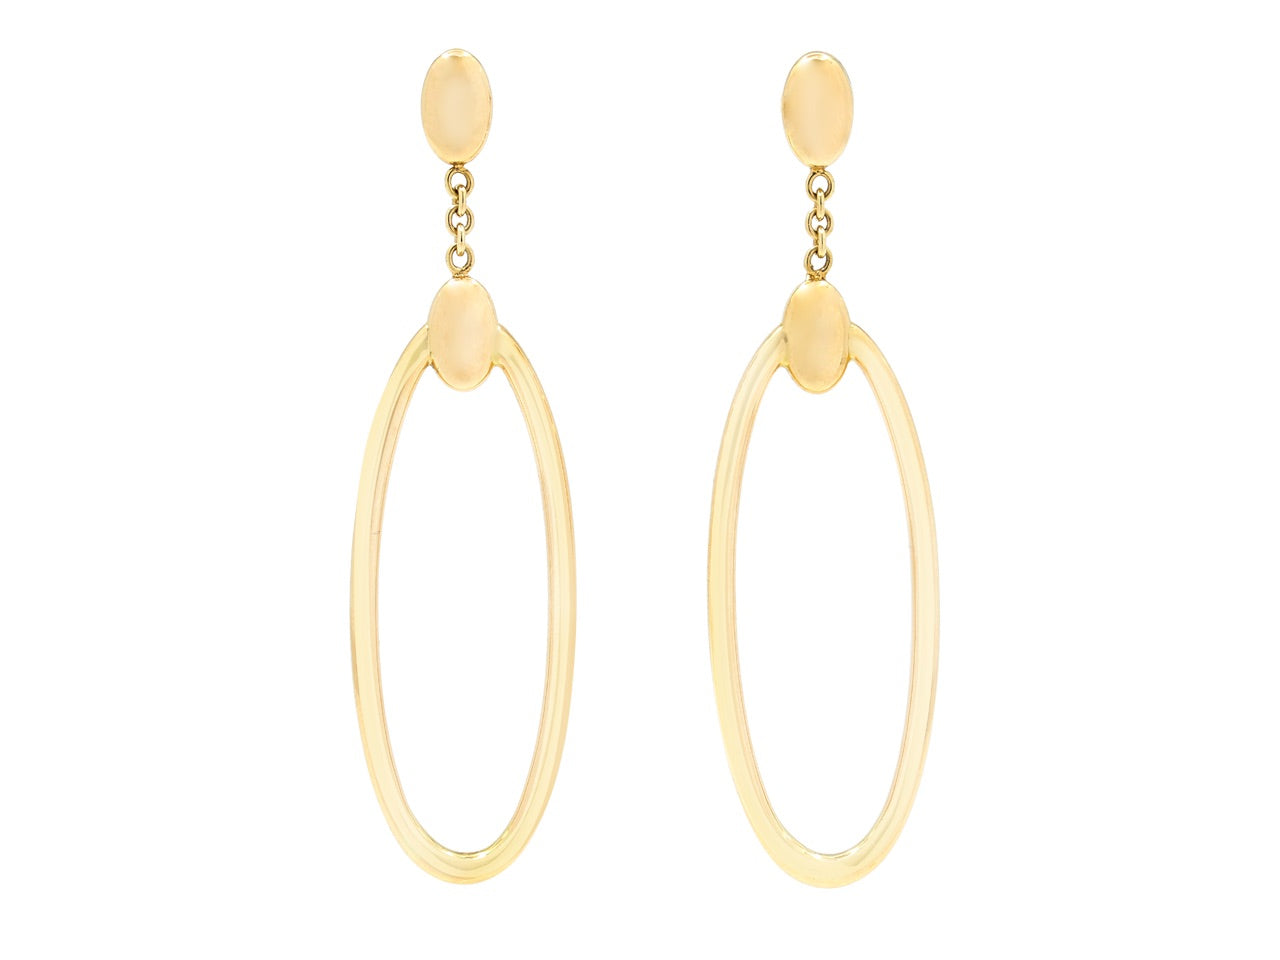 Gold Hoop Earrings, by Beladora